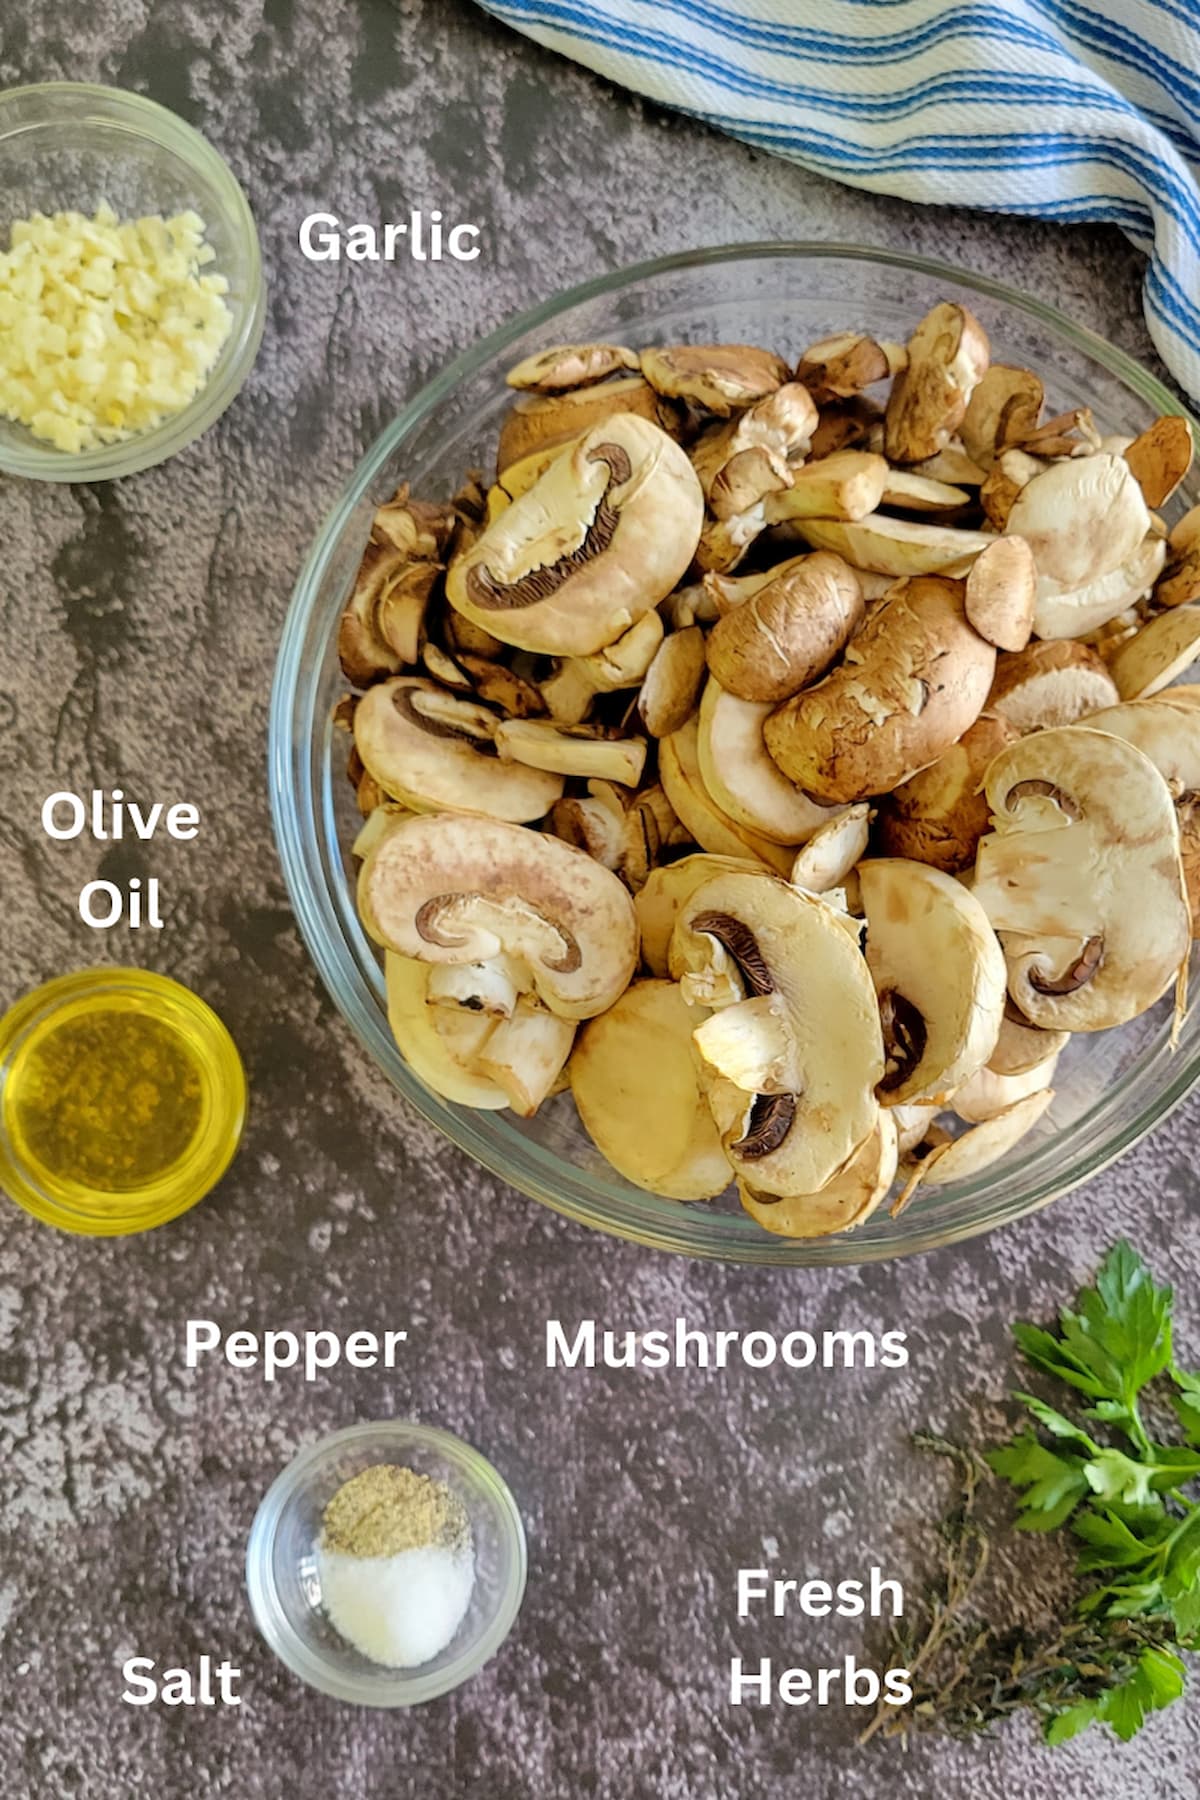 ingredients for sauteed mushrooms - mushrooms, garlic, salt, pepper, olive oil, fresh herbs